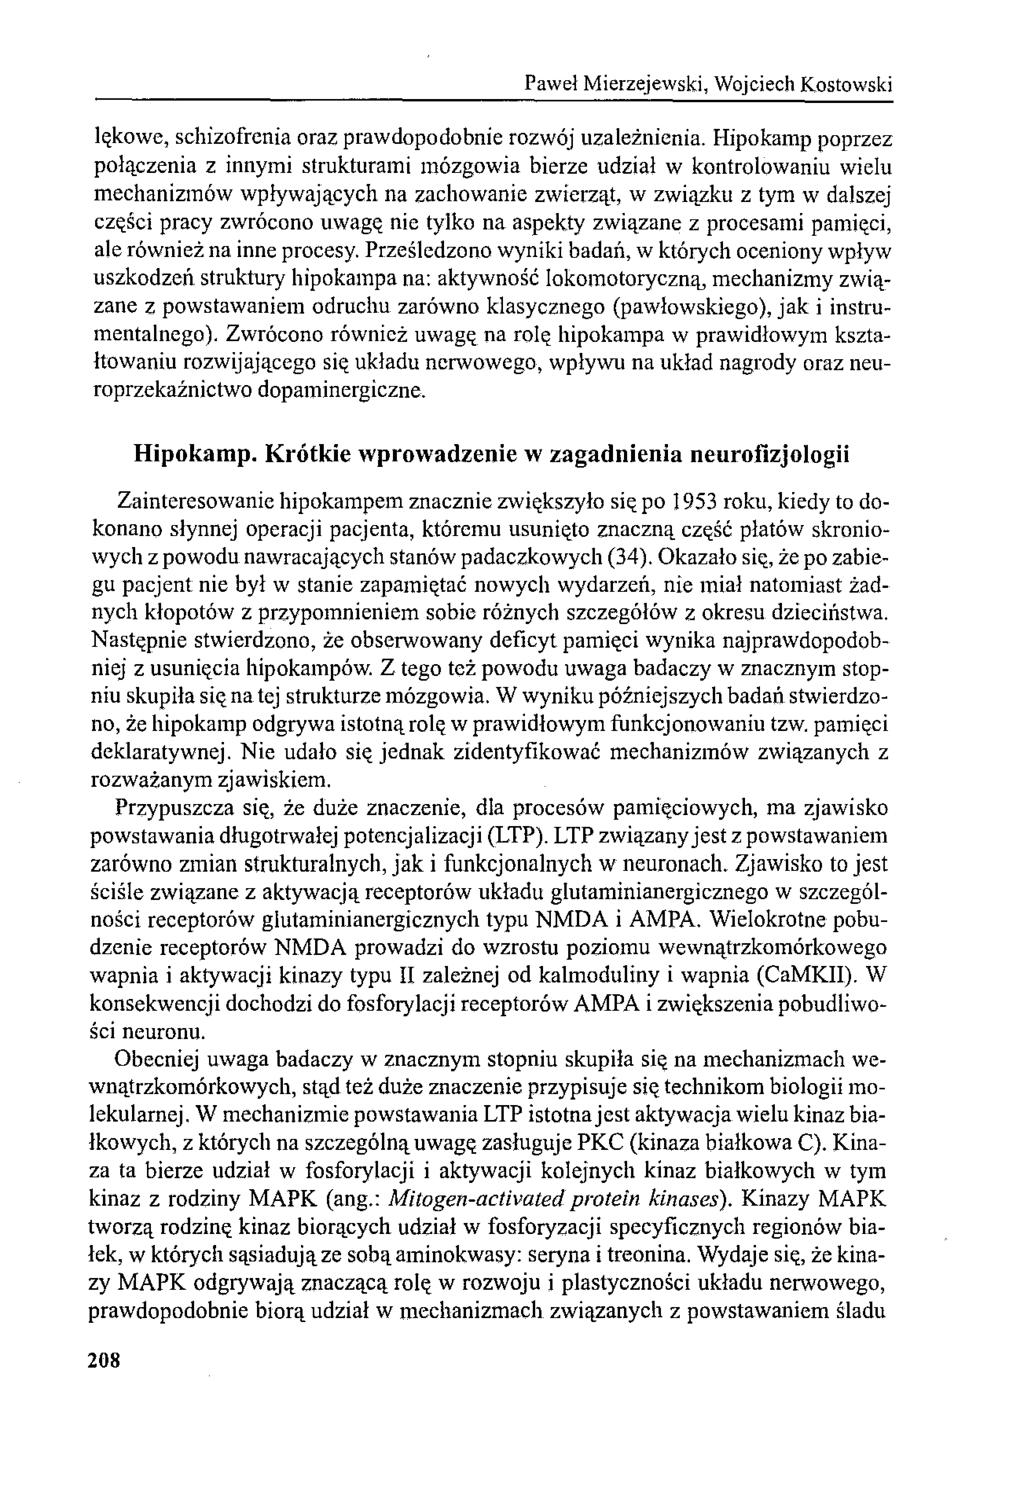 Paweł Mierzejewski, Wojciech Kostowski lękowe, schizofrenia oraz prawdopodobnie rozwój uzależnienia.